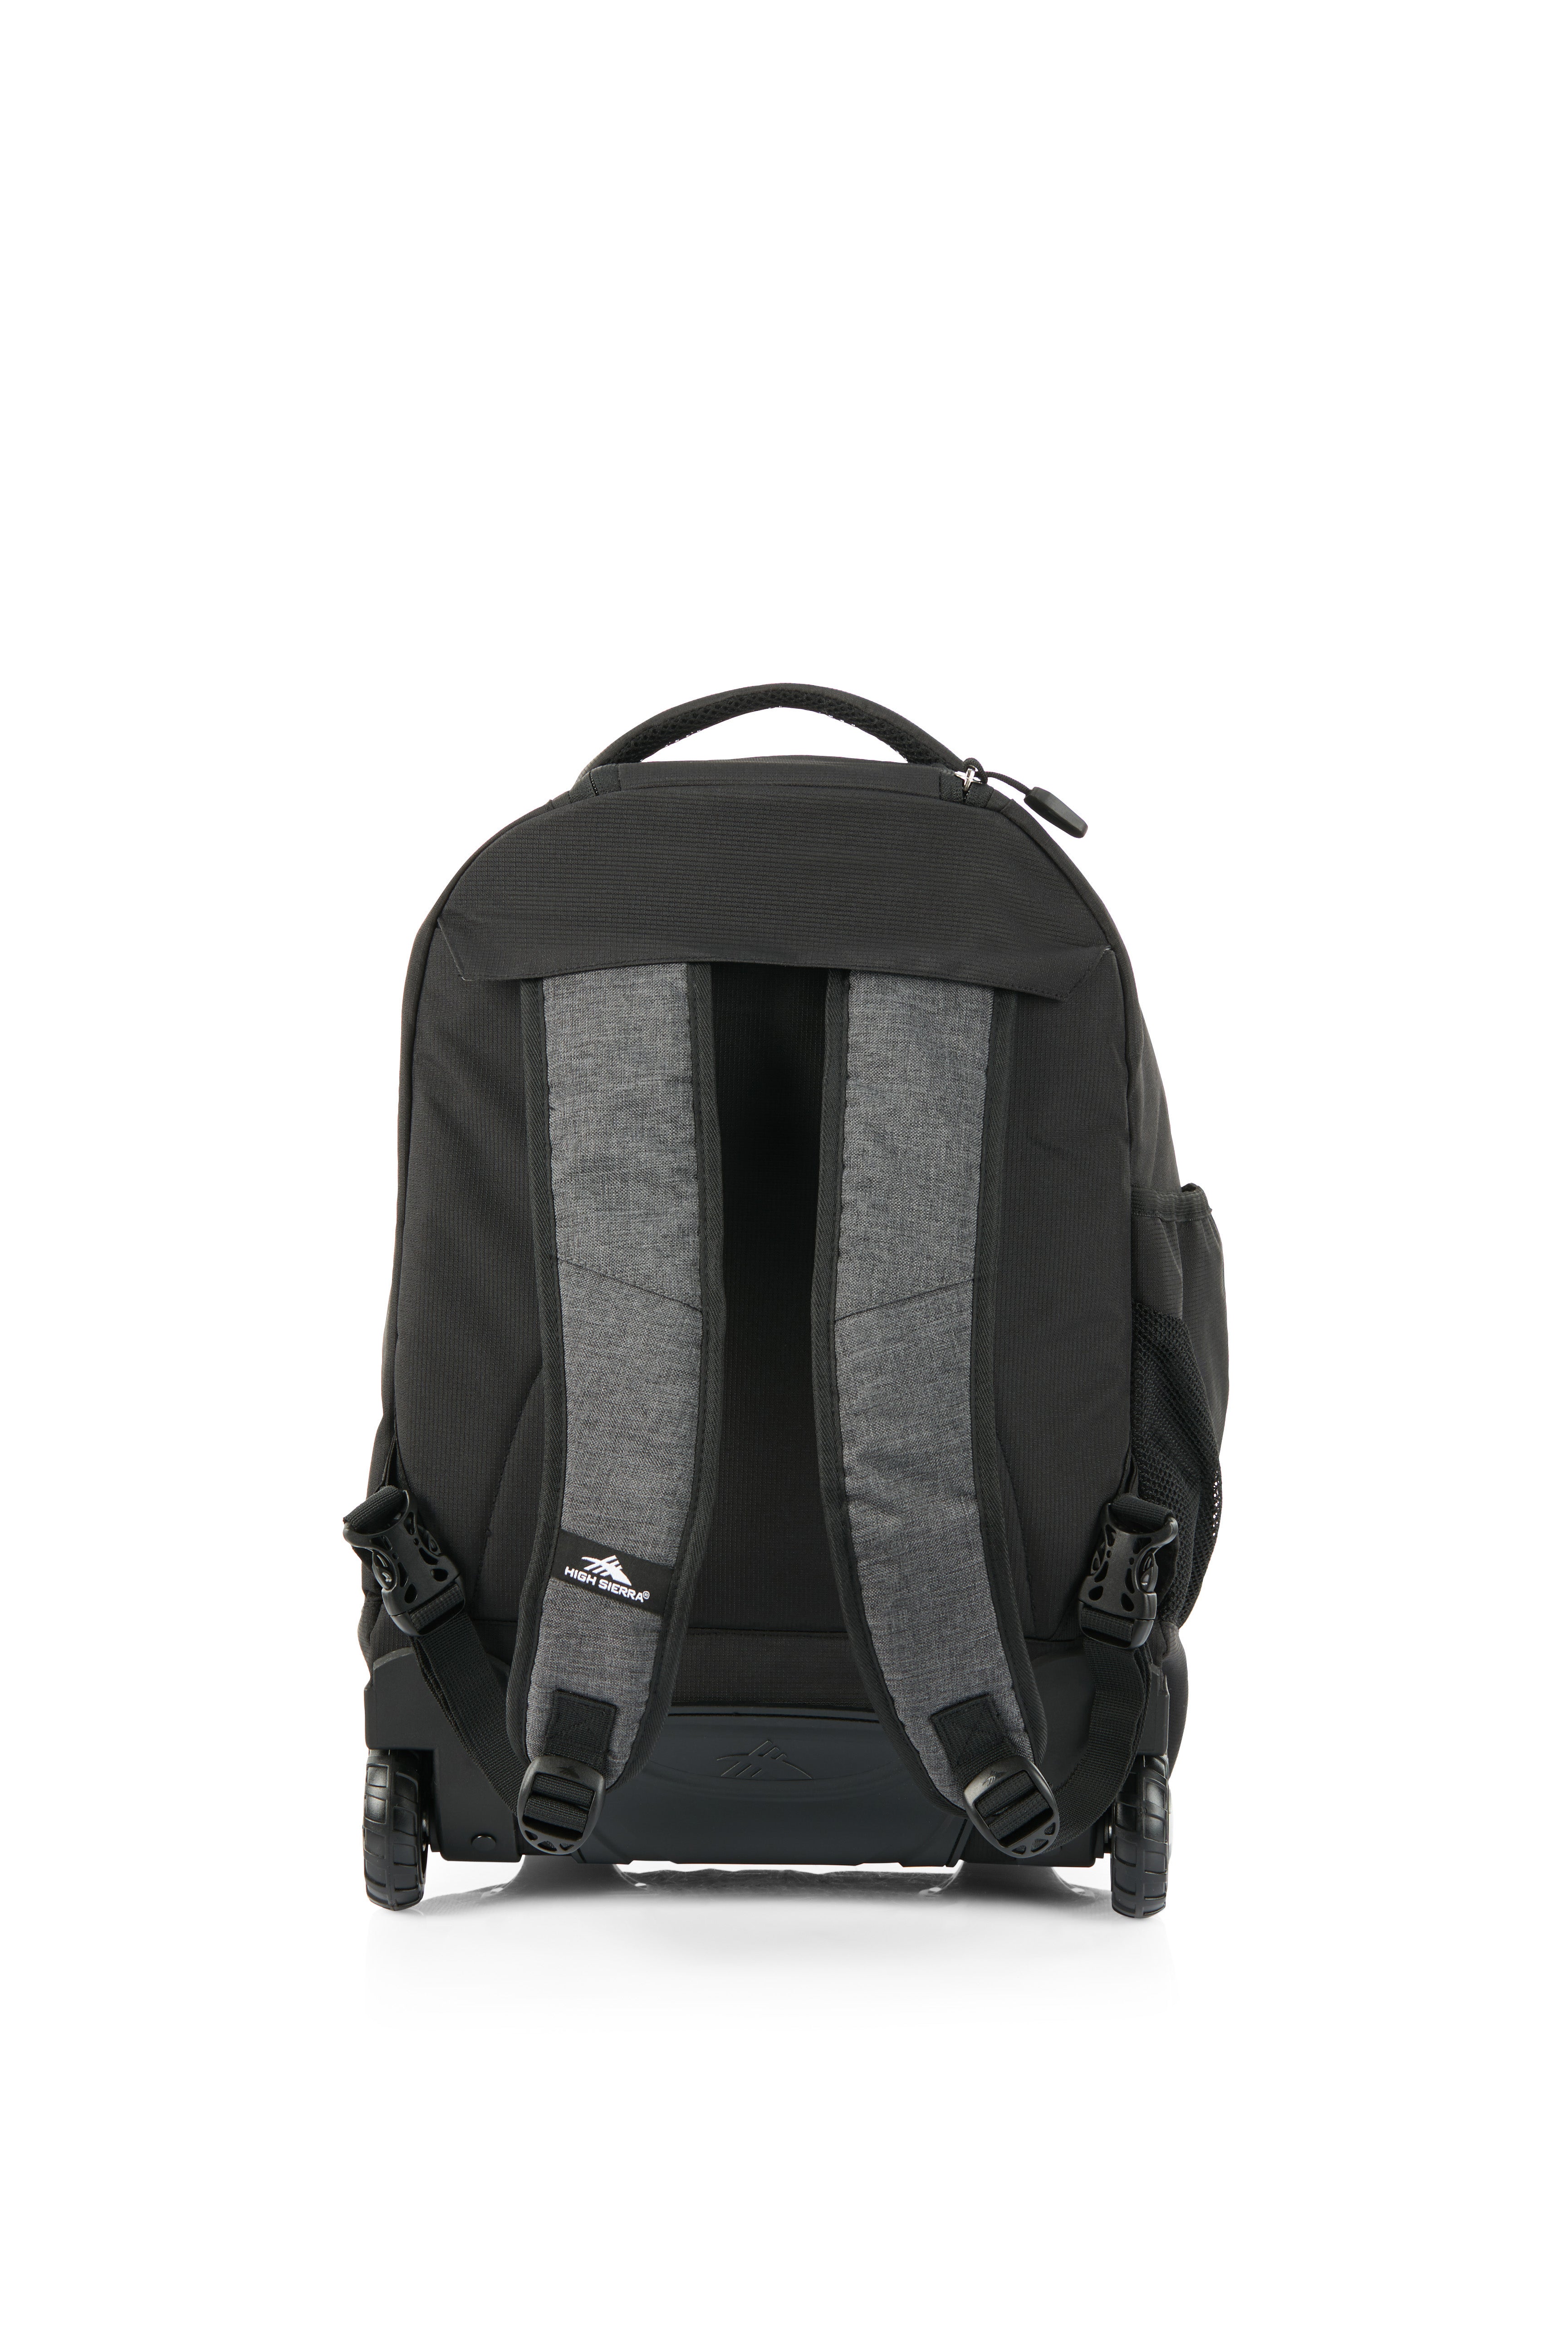 High Sierra - Jarvis Pro backpack on wheels - Black-7